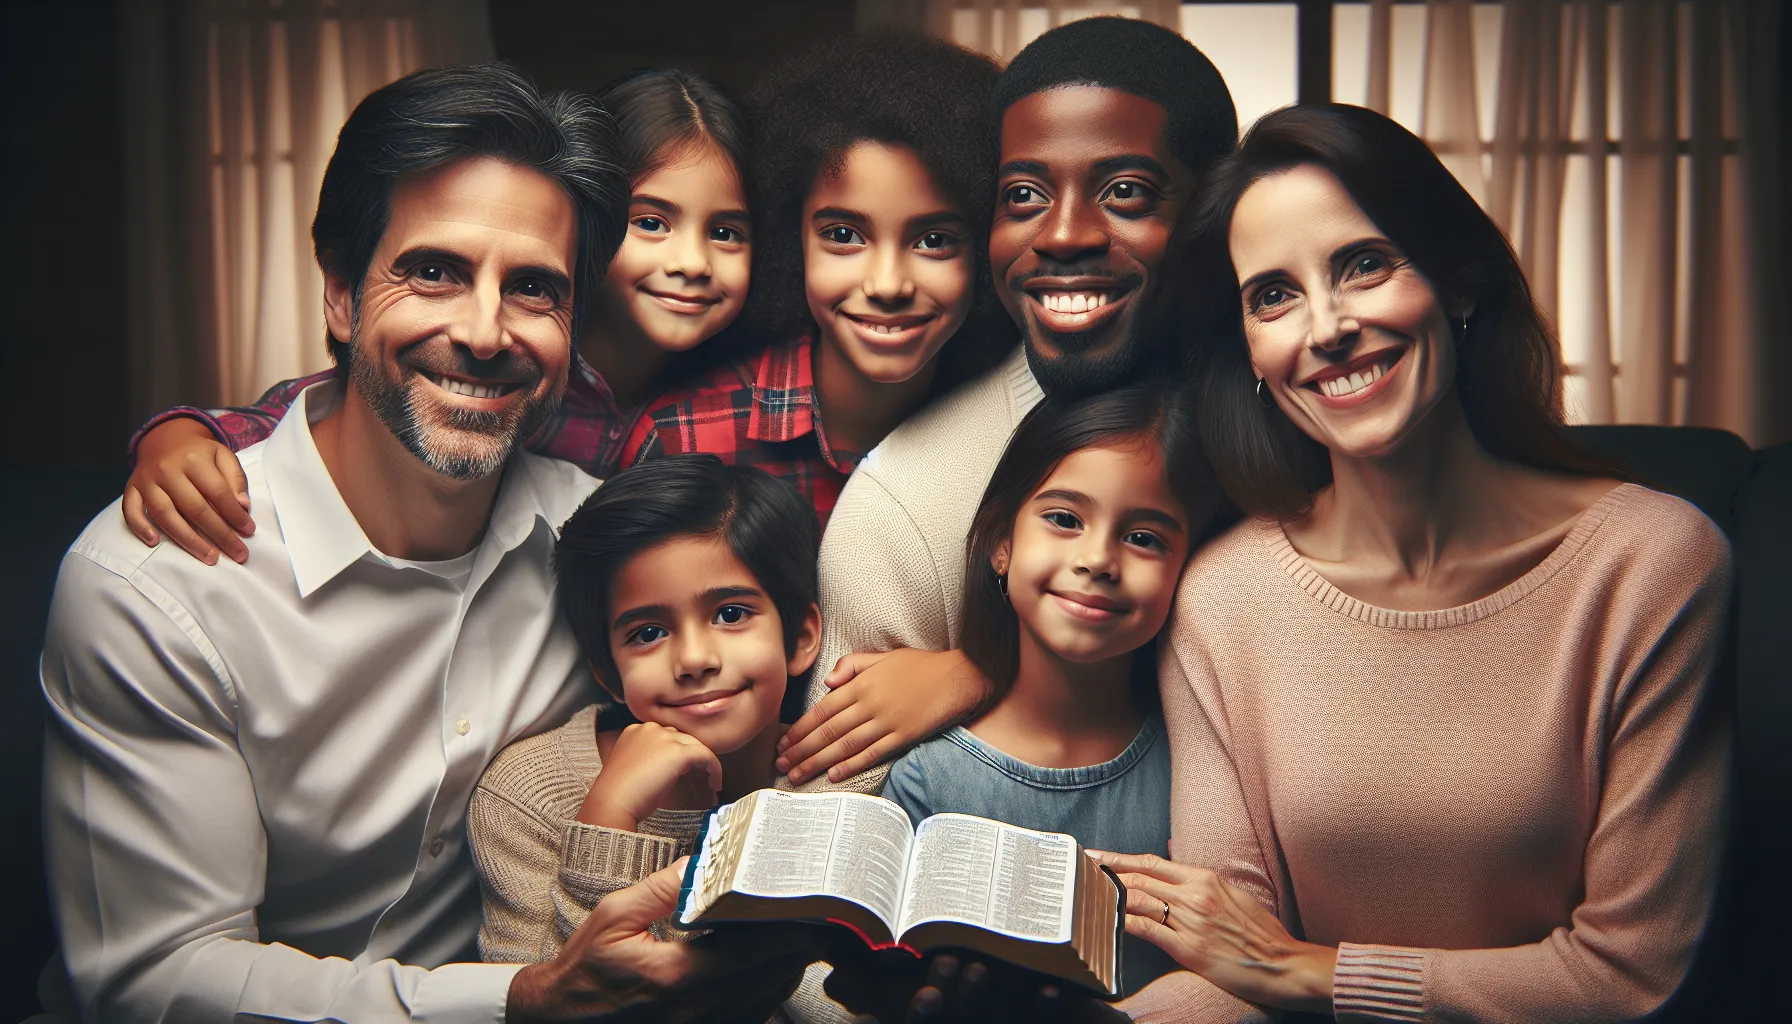 Imagen de una familia cristiana reunida y sonriente